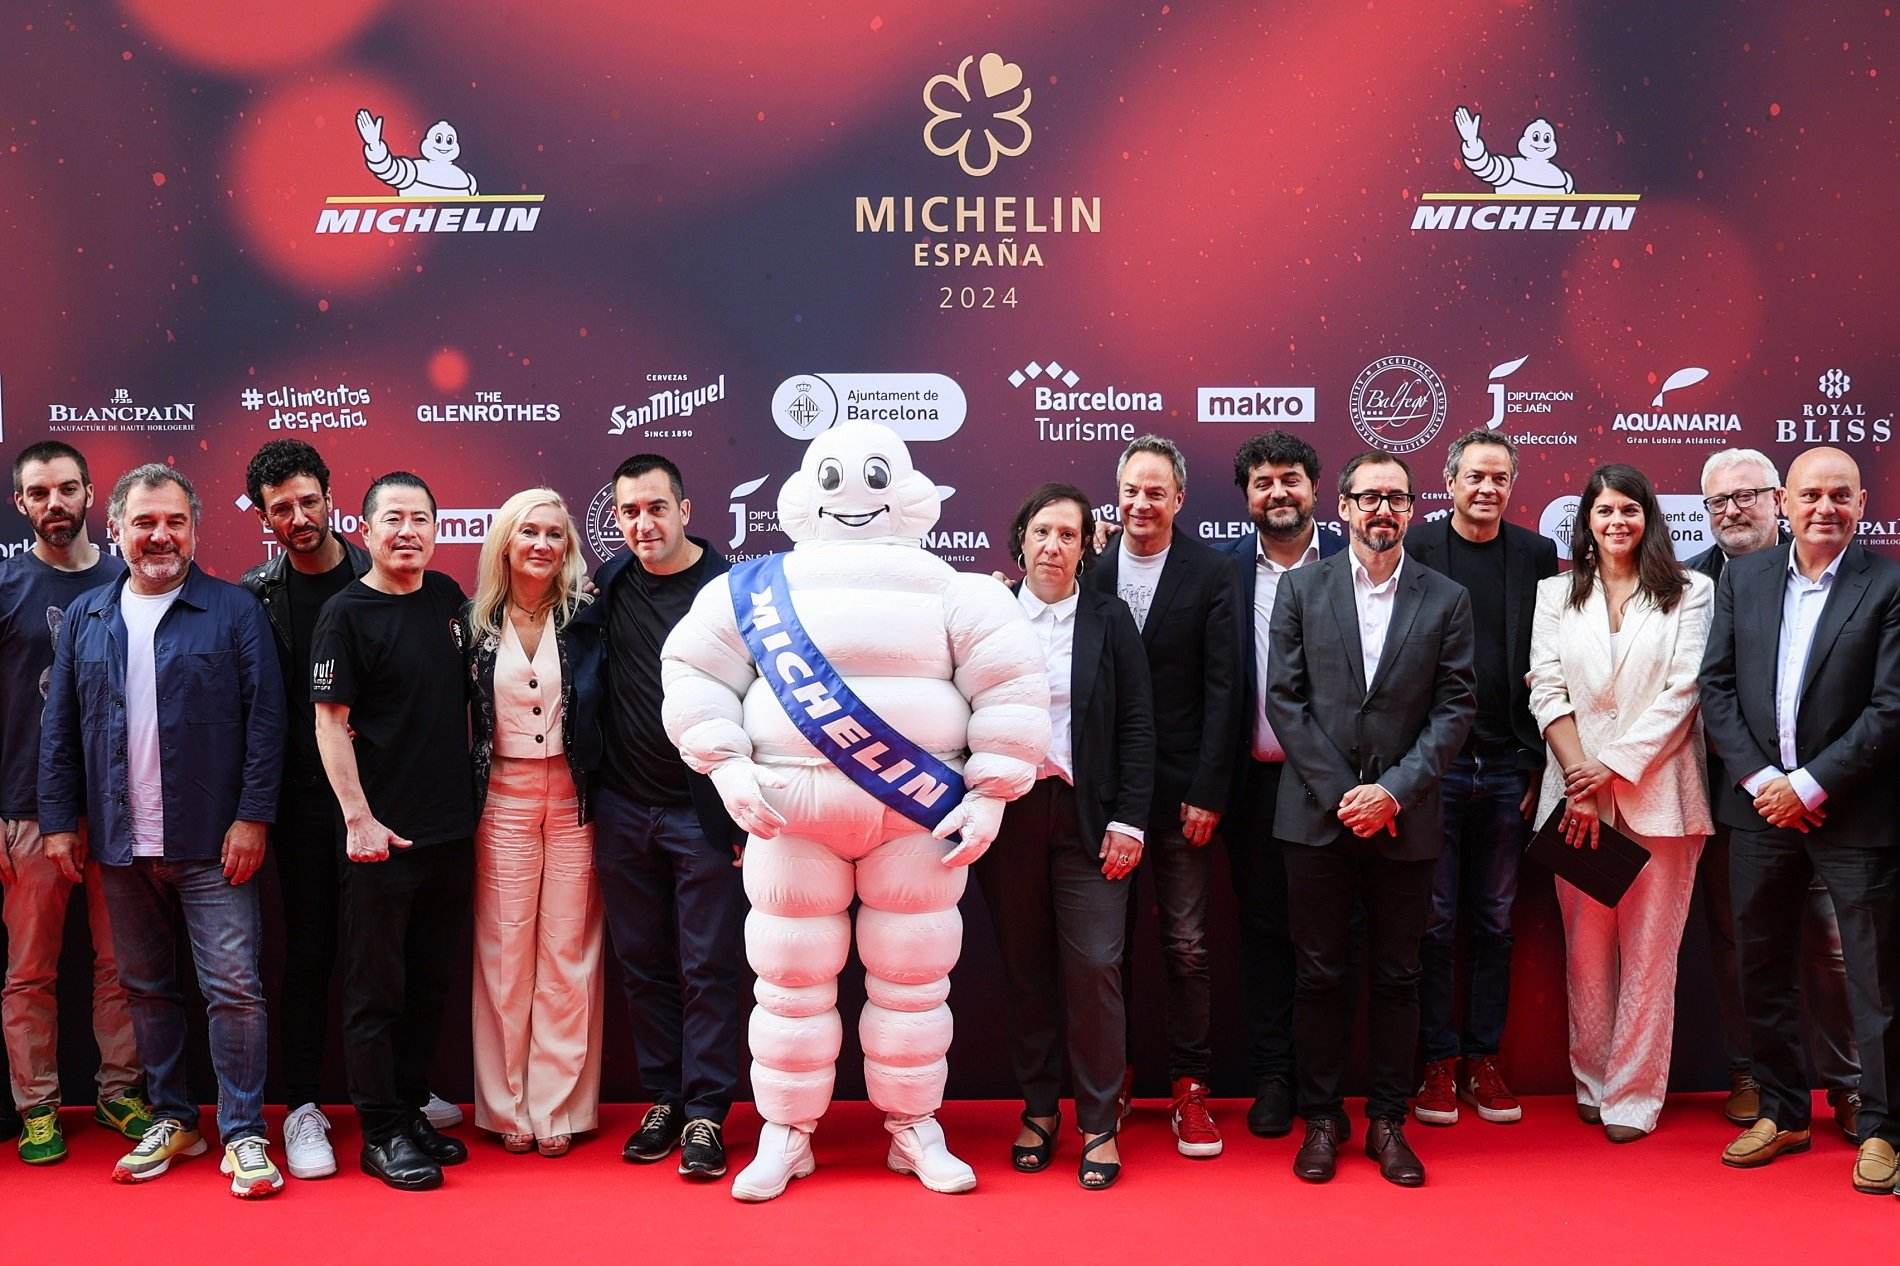 Andreu Buenafuente presentarà la Gala Michelin Espanya 2024 a Barcelona